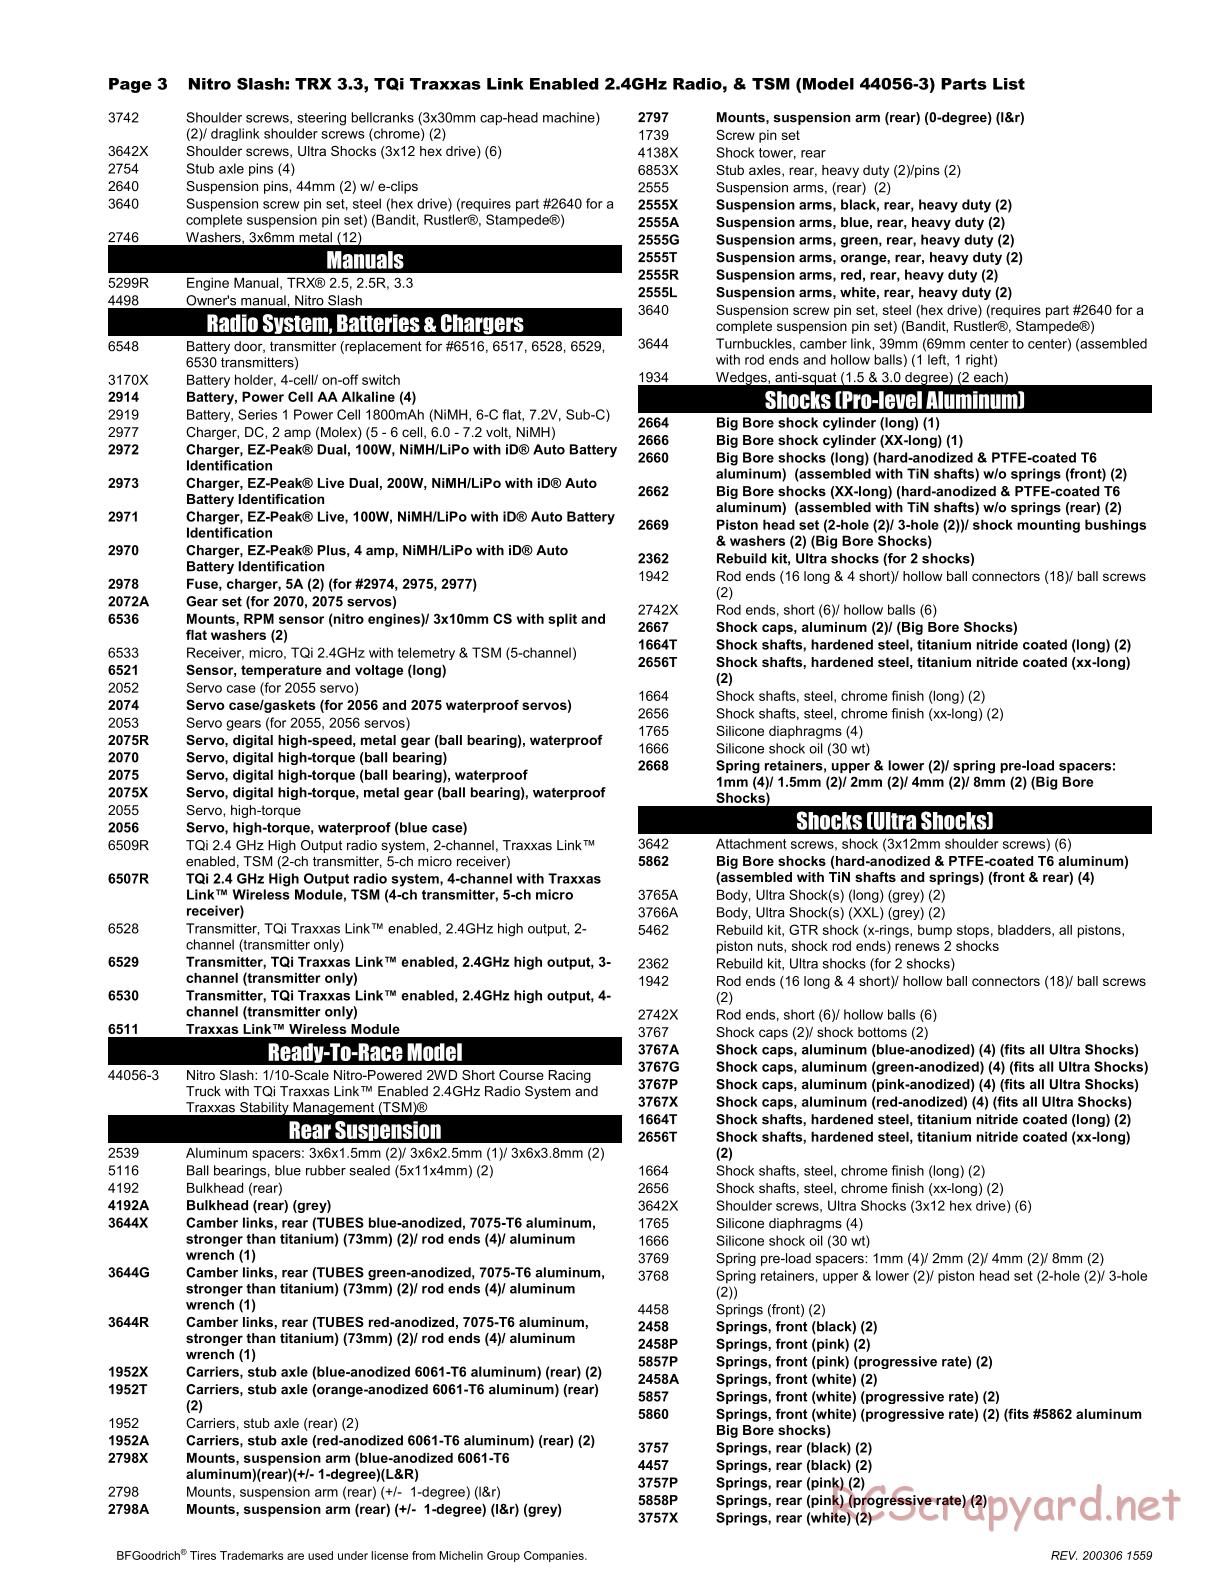 Traxxas - Nitro Slash TSM (2015) - Parts List - Page 3